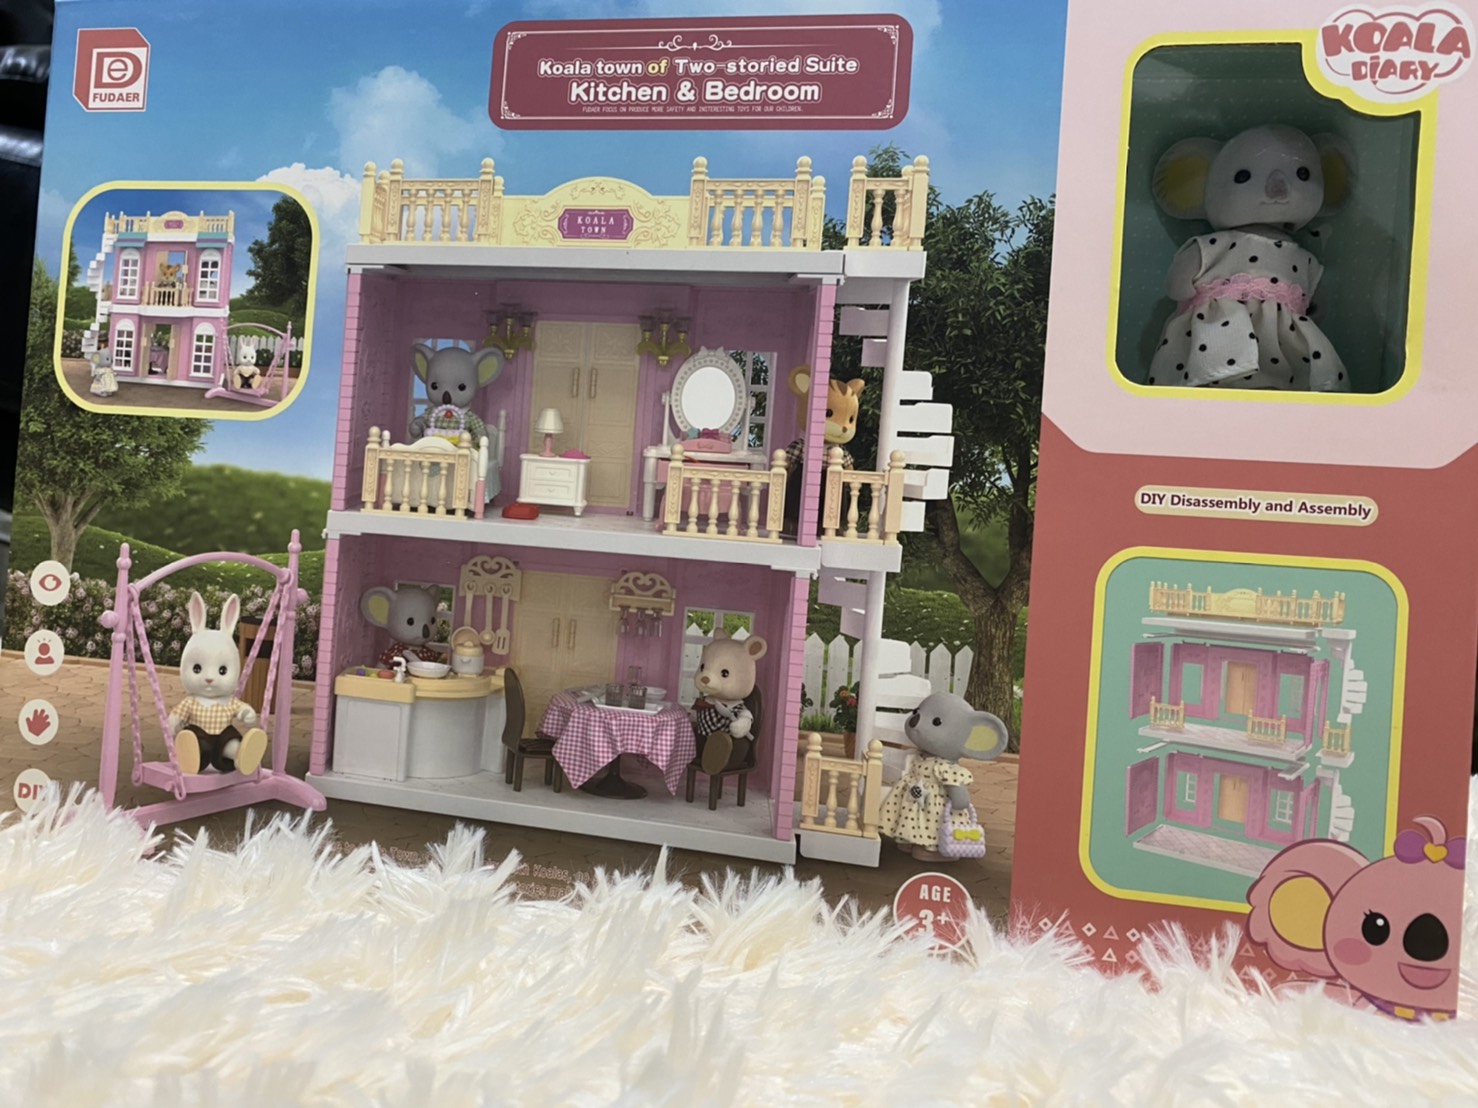 ของเล่น ของเล่นเด็ก บ้านกระต่าย บ้านกระต่ายชุดบ้าน 2 ชั้น โคอาล่าทาว์น Koala Town of Two storied suite บ้านกระต่าย2ชั้น ชุดKoala Town Kitchen and Bedroom